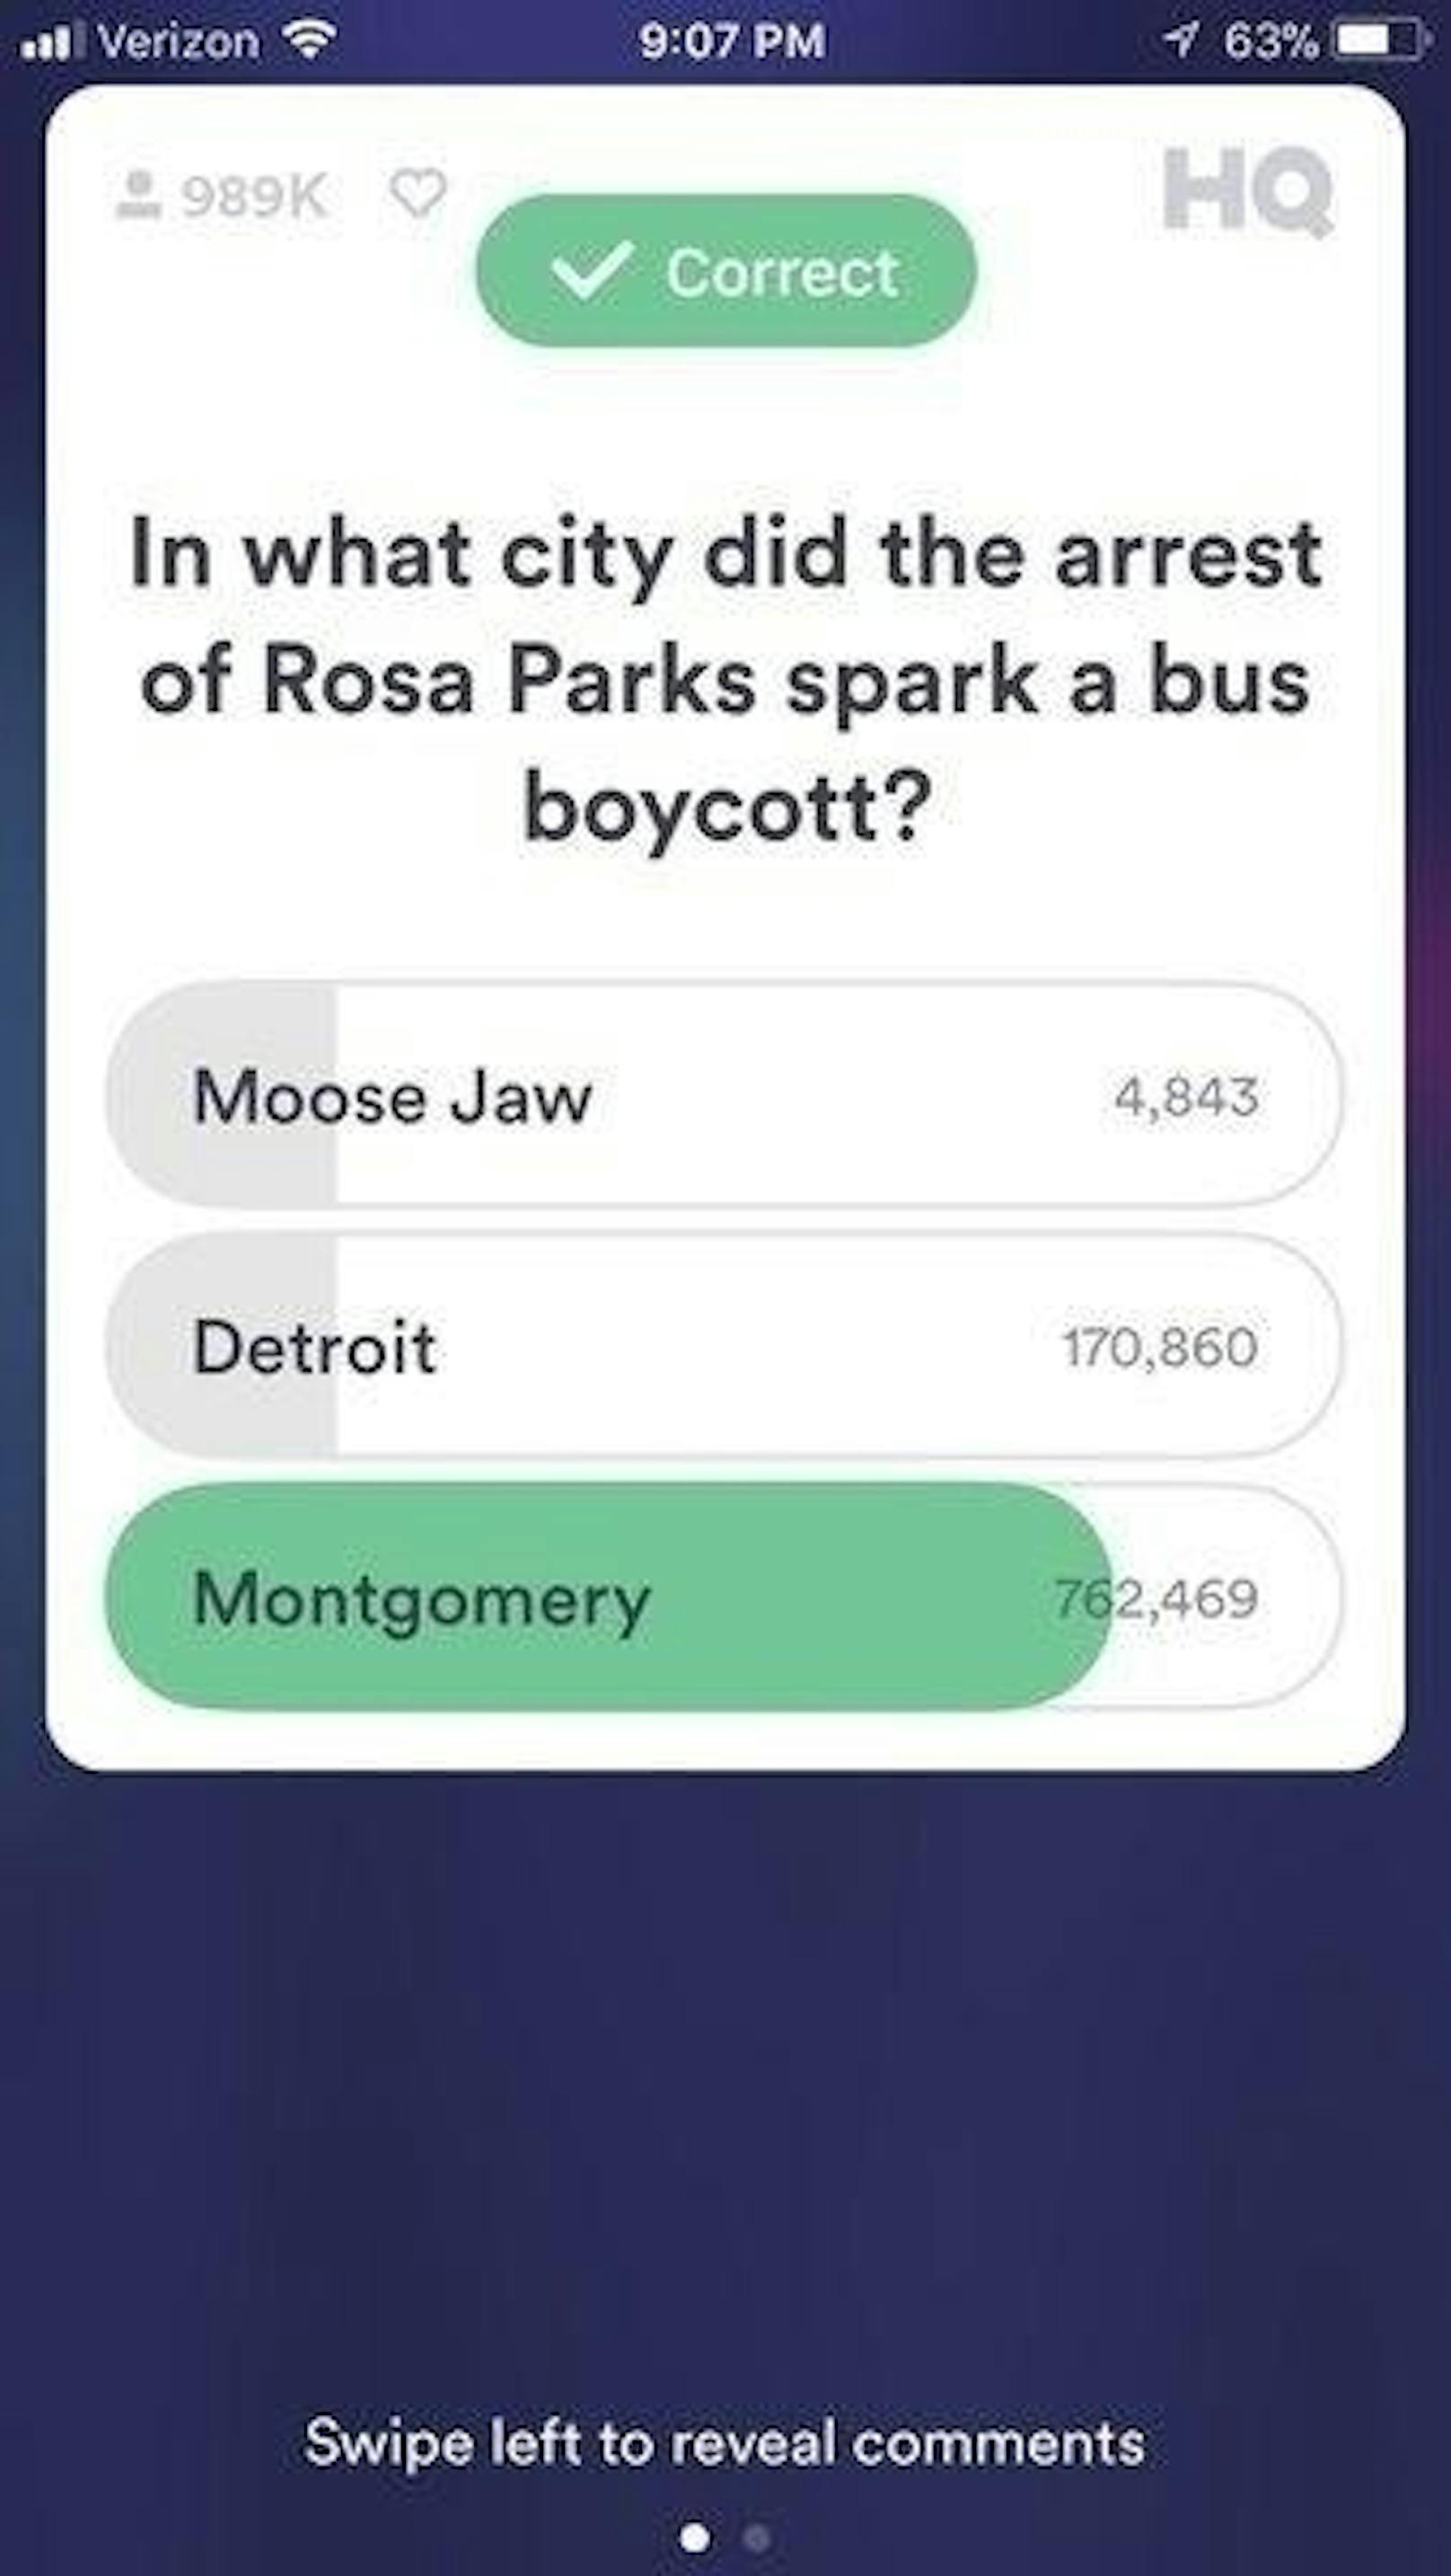 Ab der vierten Frage kommen dann kniffligere Fragen wie: "In welcher Stadt löste der Arrest von Rosa Parks einen Bus-Boykott aus?"